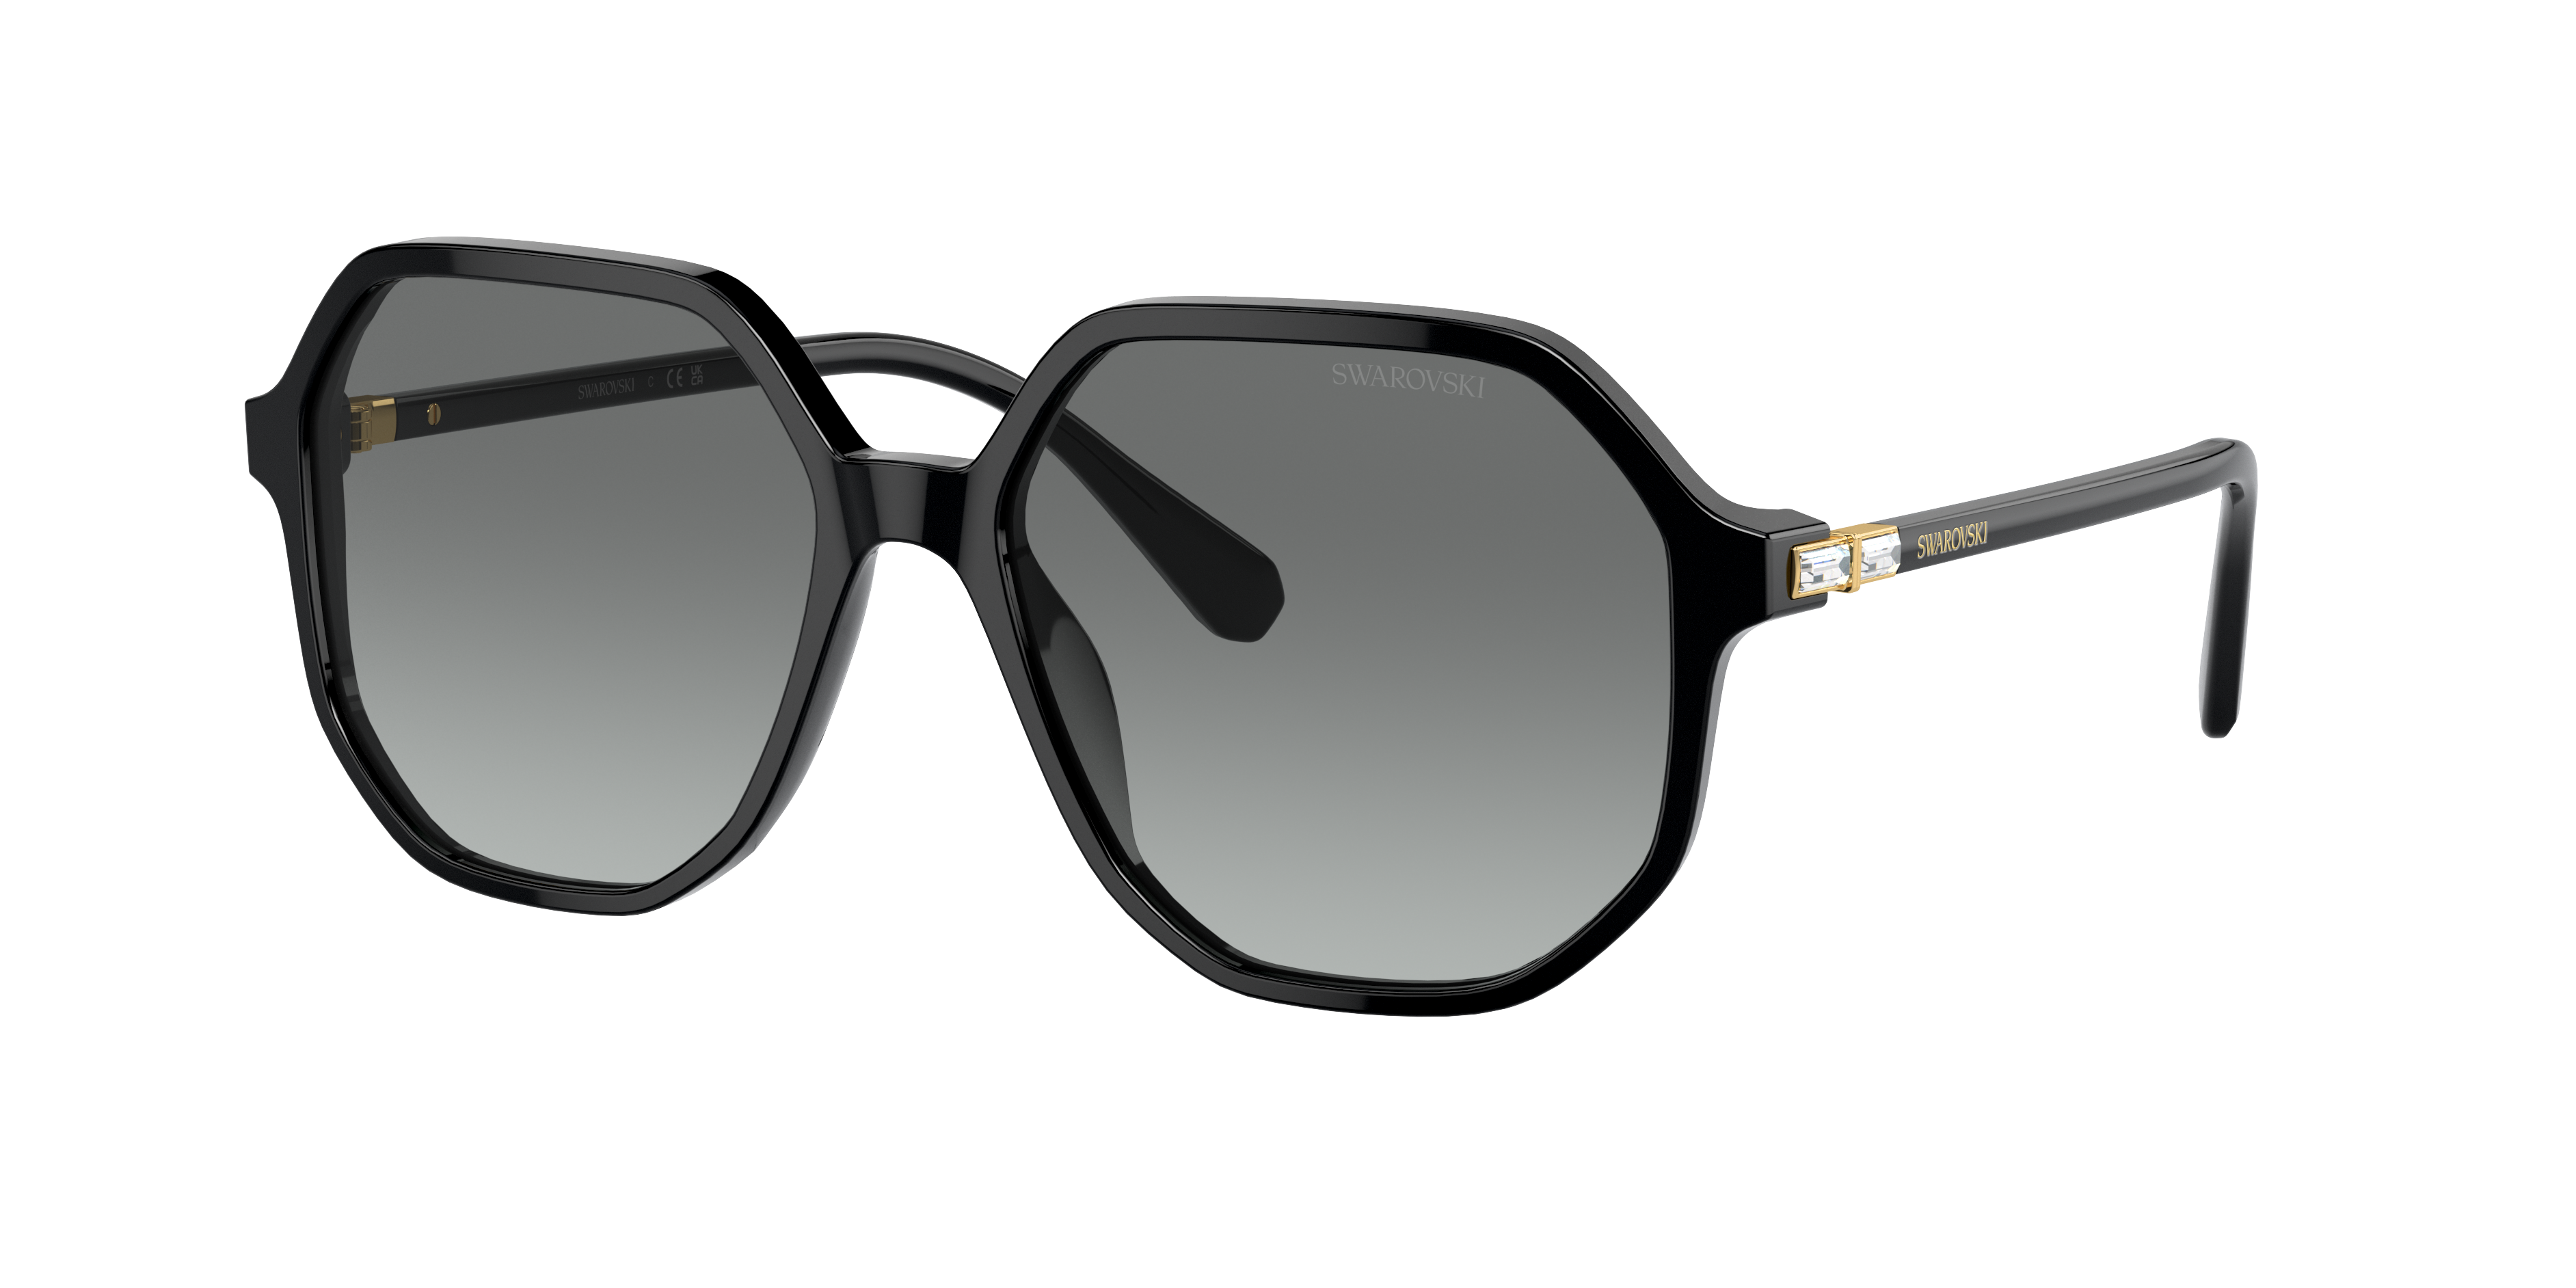 Consulte nosso catálogo de Óculos de Sol Swarovski Eyewear com diversos modelos e preços para sua escolha.